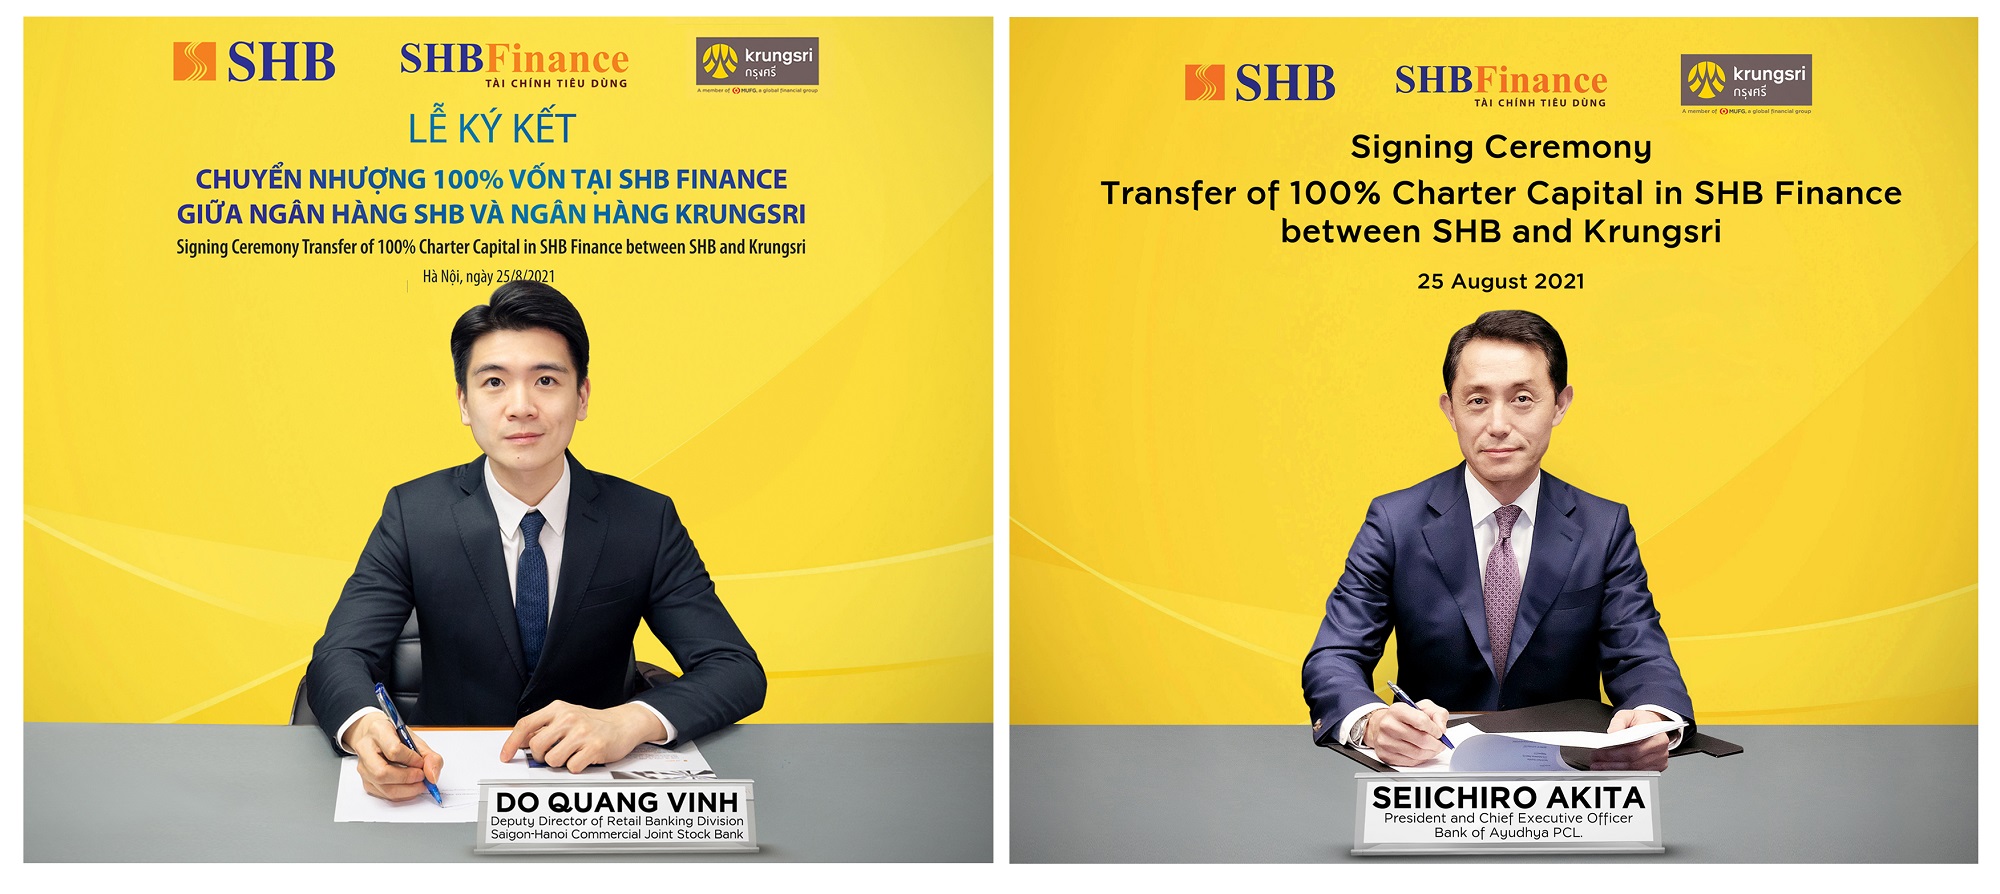 Đây là một trong những bước cuối cùng trong lộ trình chuyển nhượng vốn điều lệ của SHB tại SHB Finance cho Ngân hàng Krungsri của Thái Lan – thành viên chiến lược thuộc Tập đoàn MUFG – Nhật Bản.